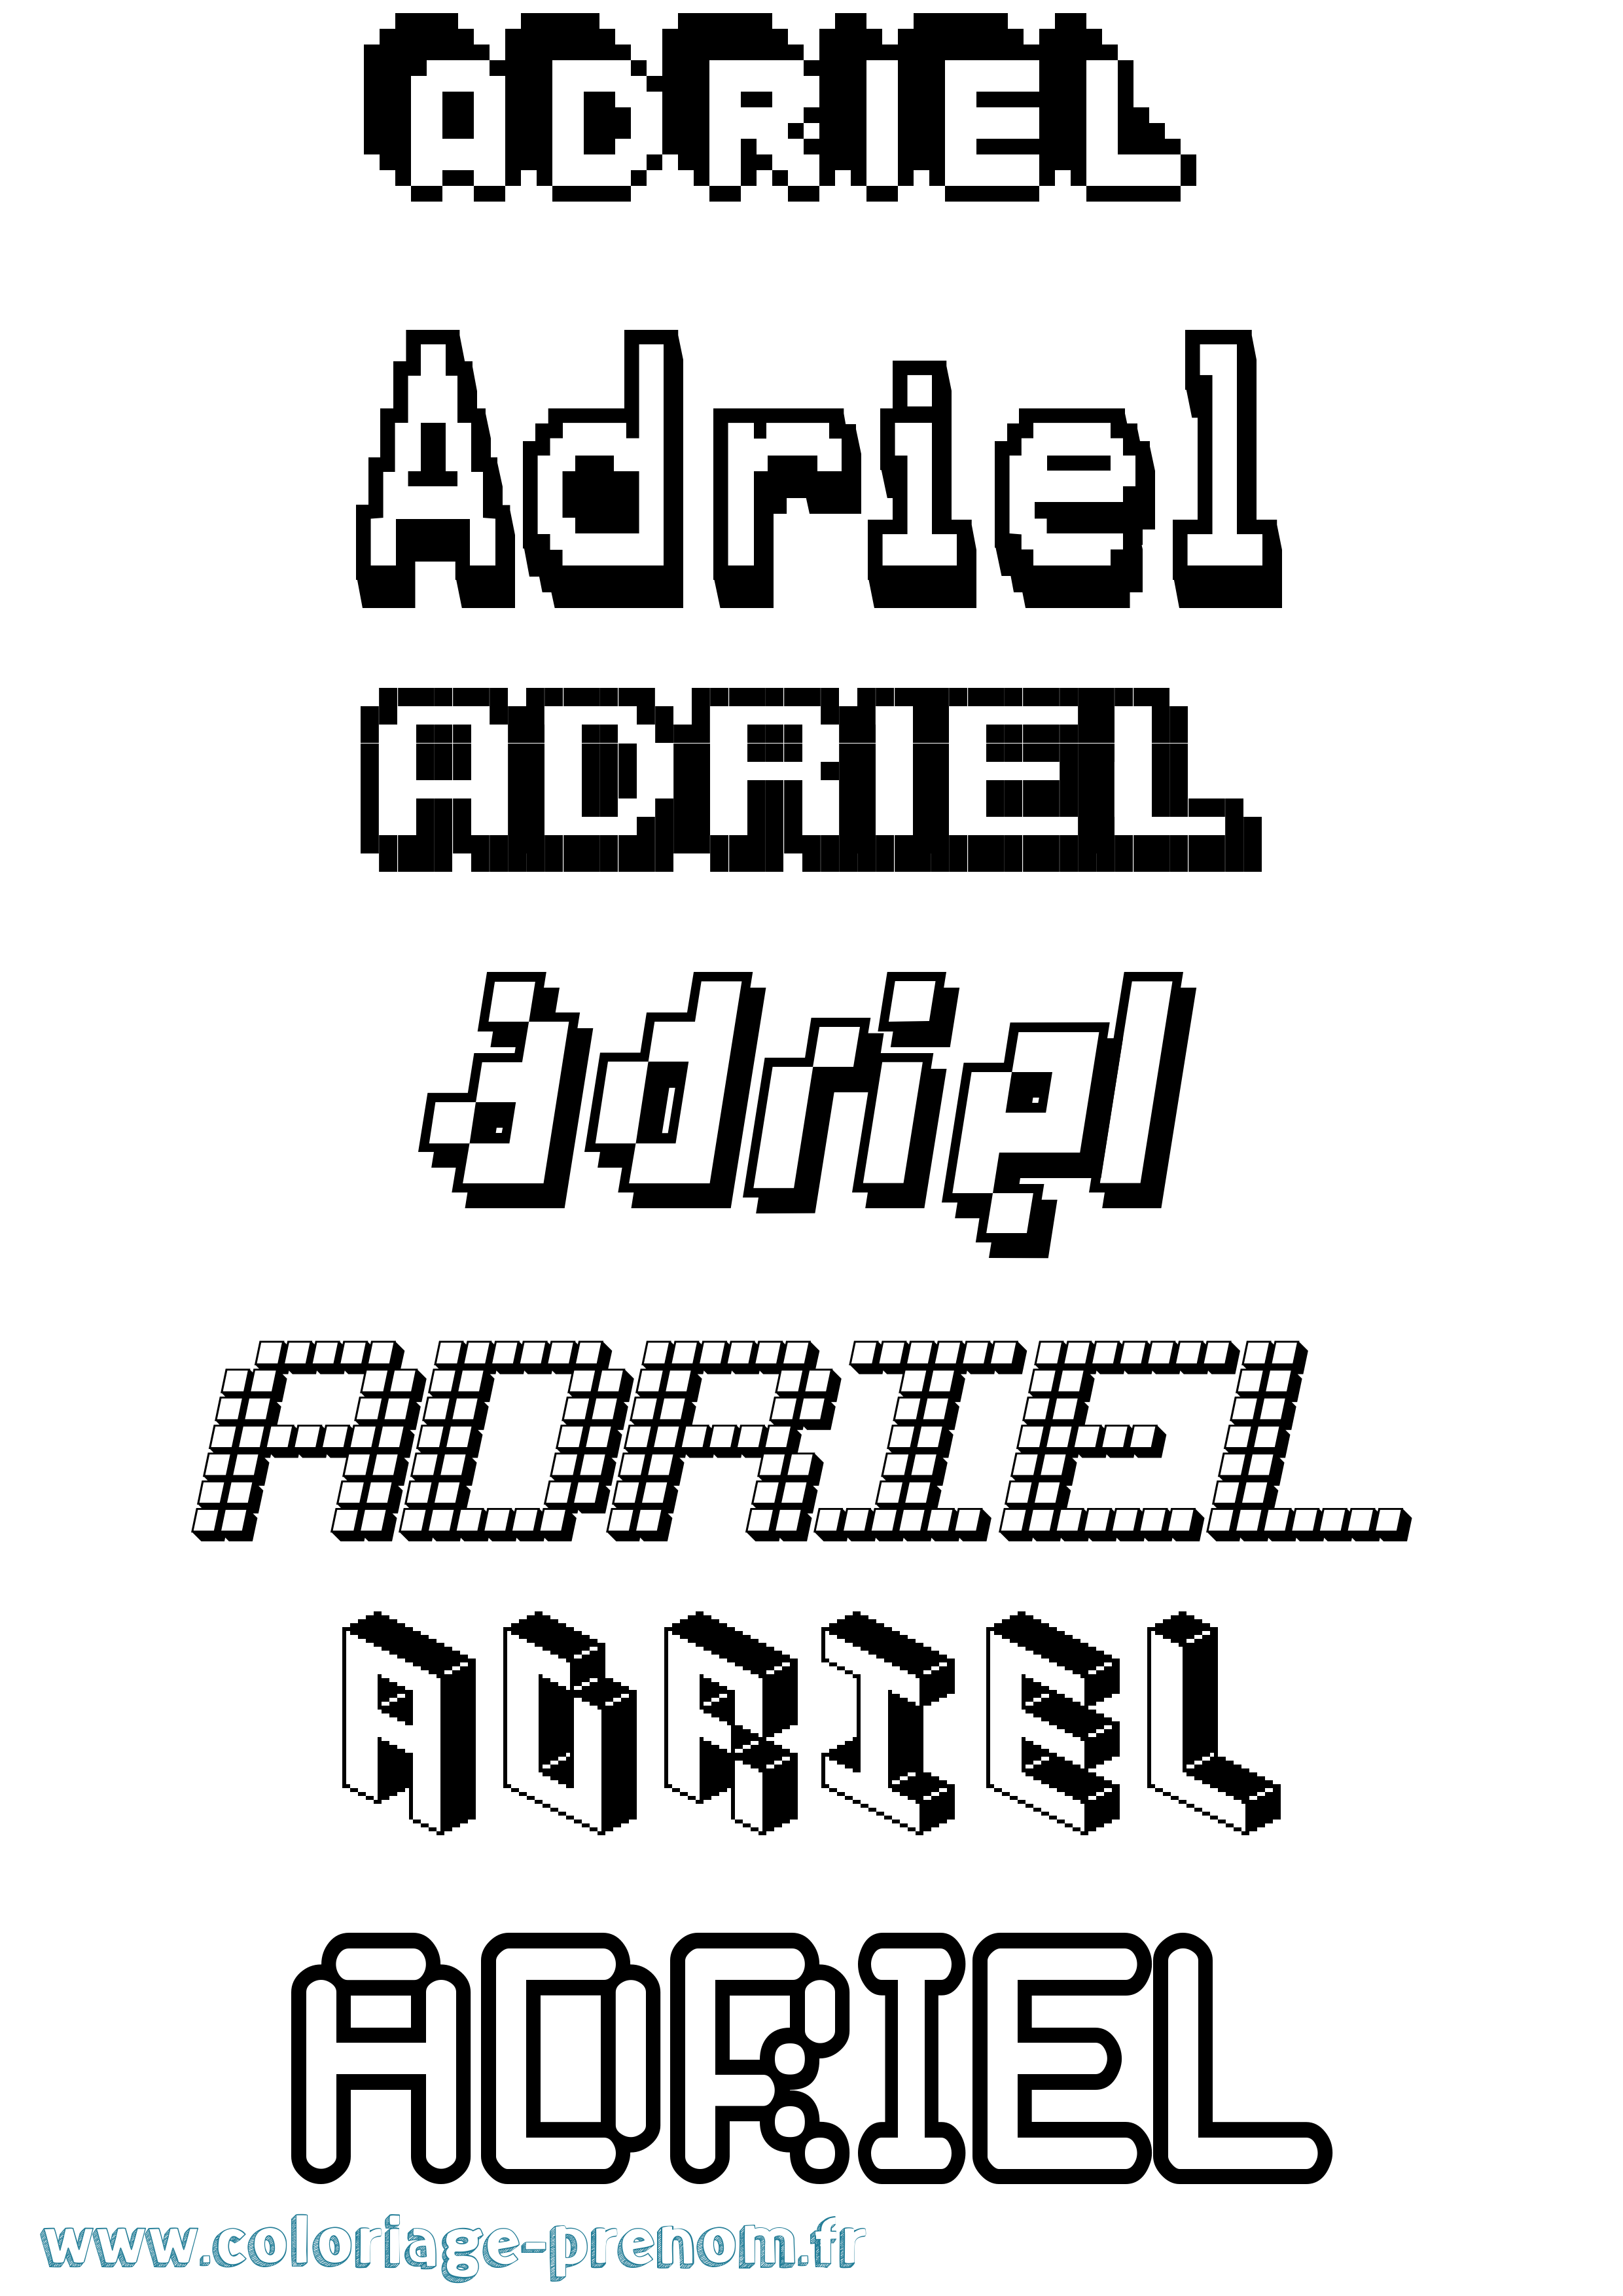 Coloriage prénom Adriel Pixel